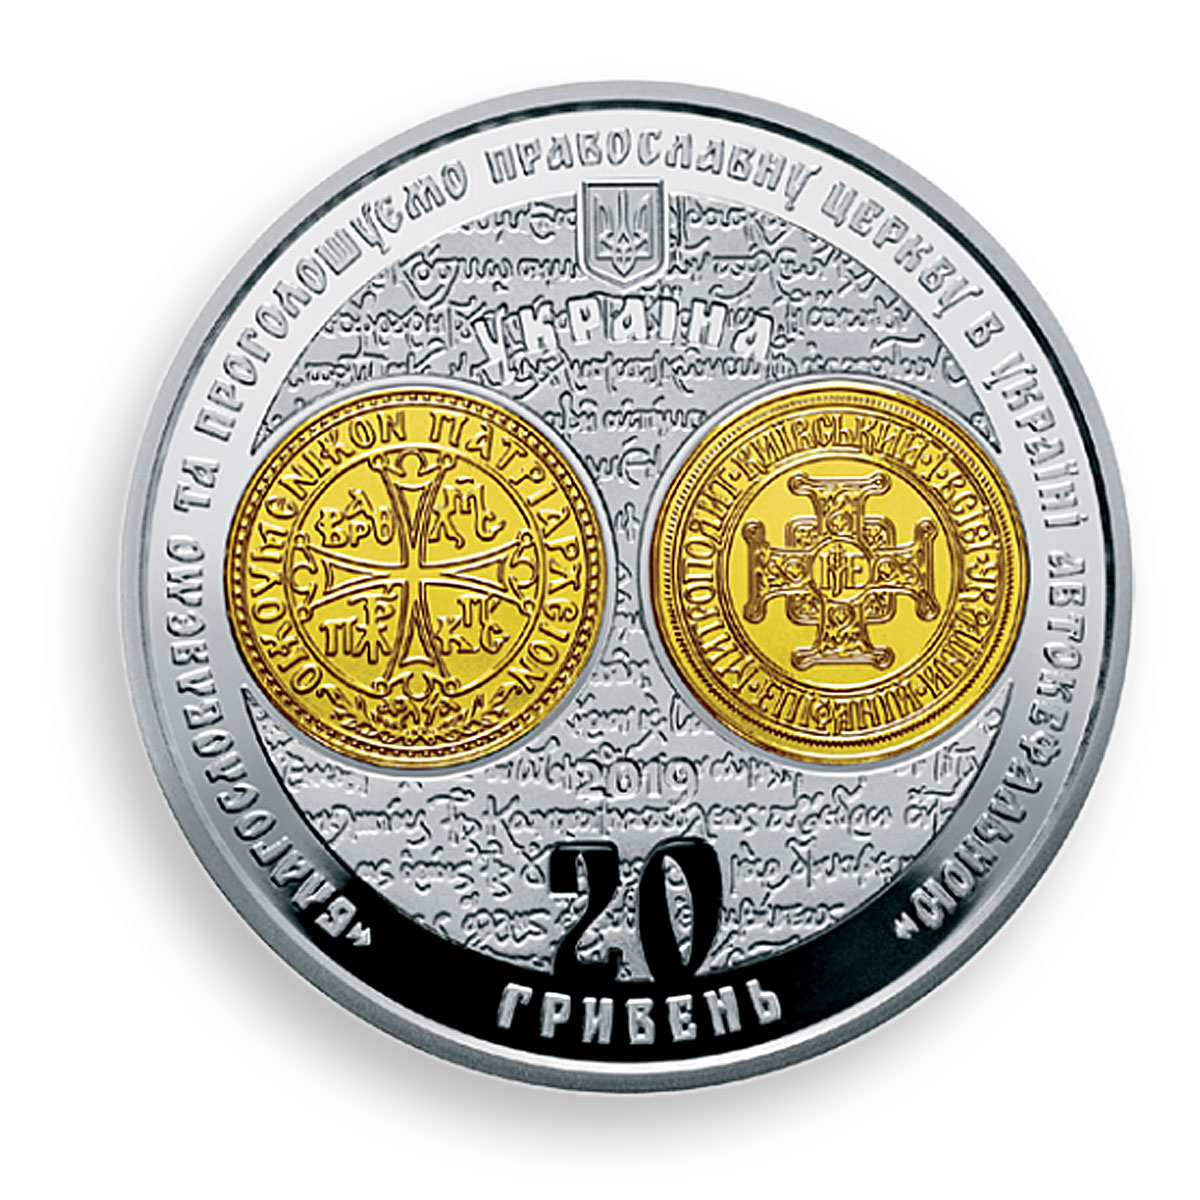 Ukraine 20 hryvnia Giving Thomas Autocephaly Orthodox Church silver coin 2019